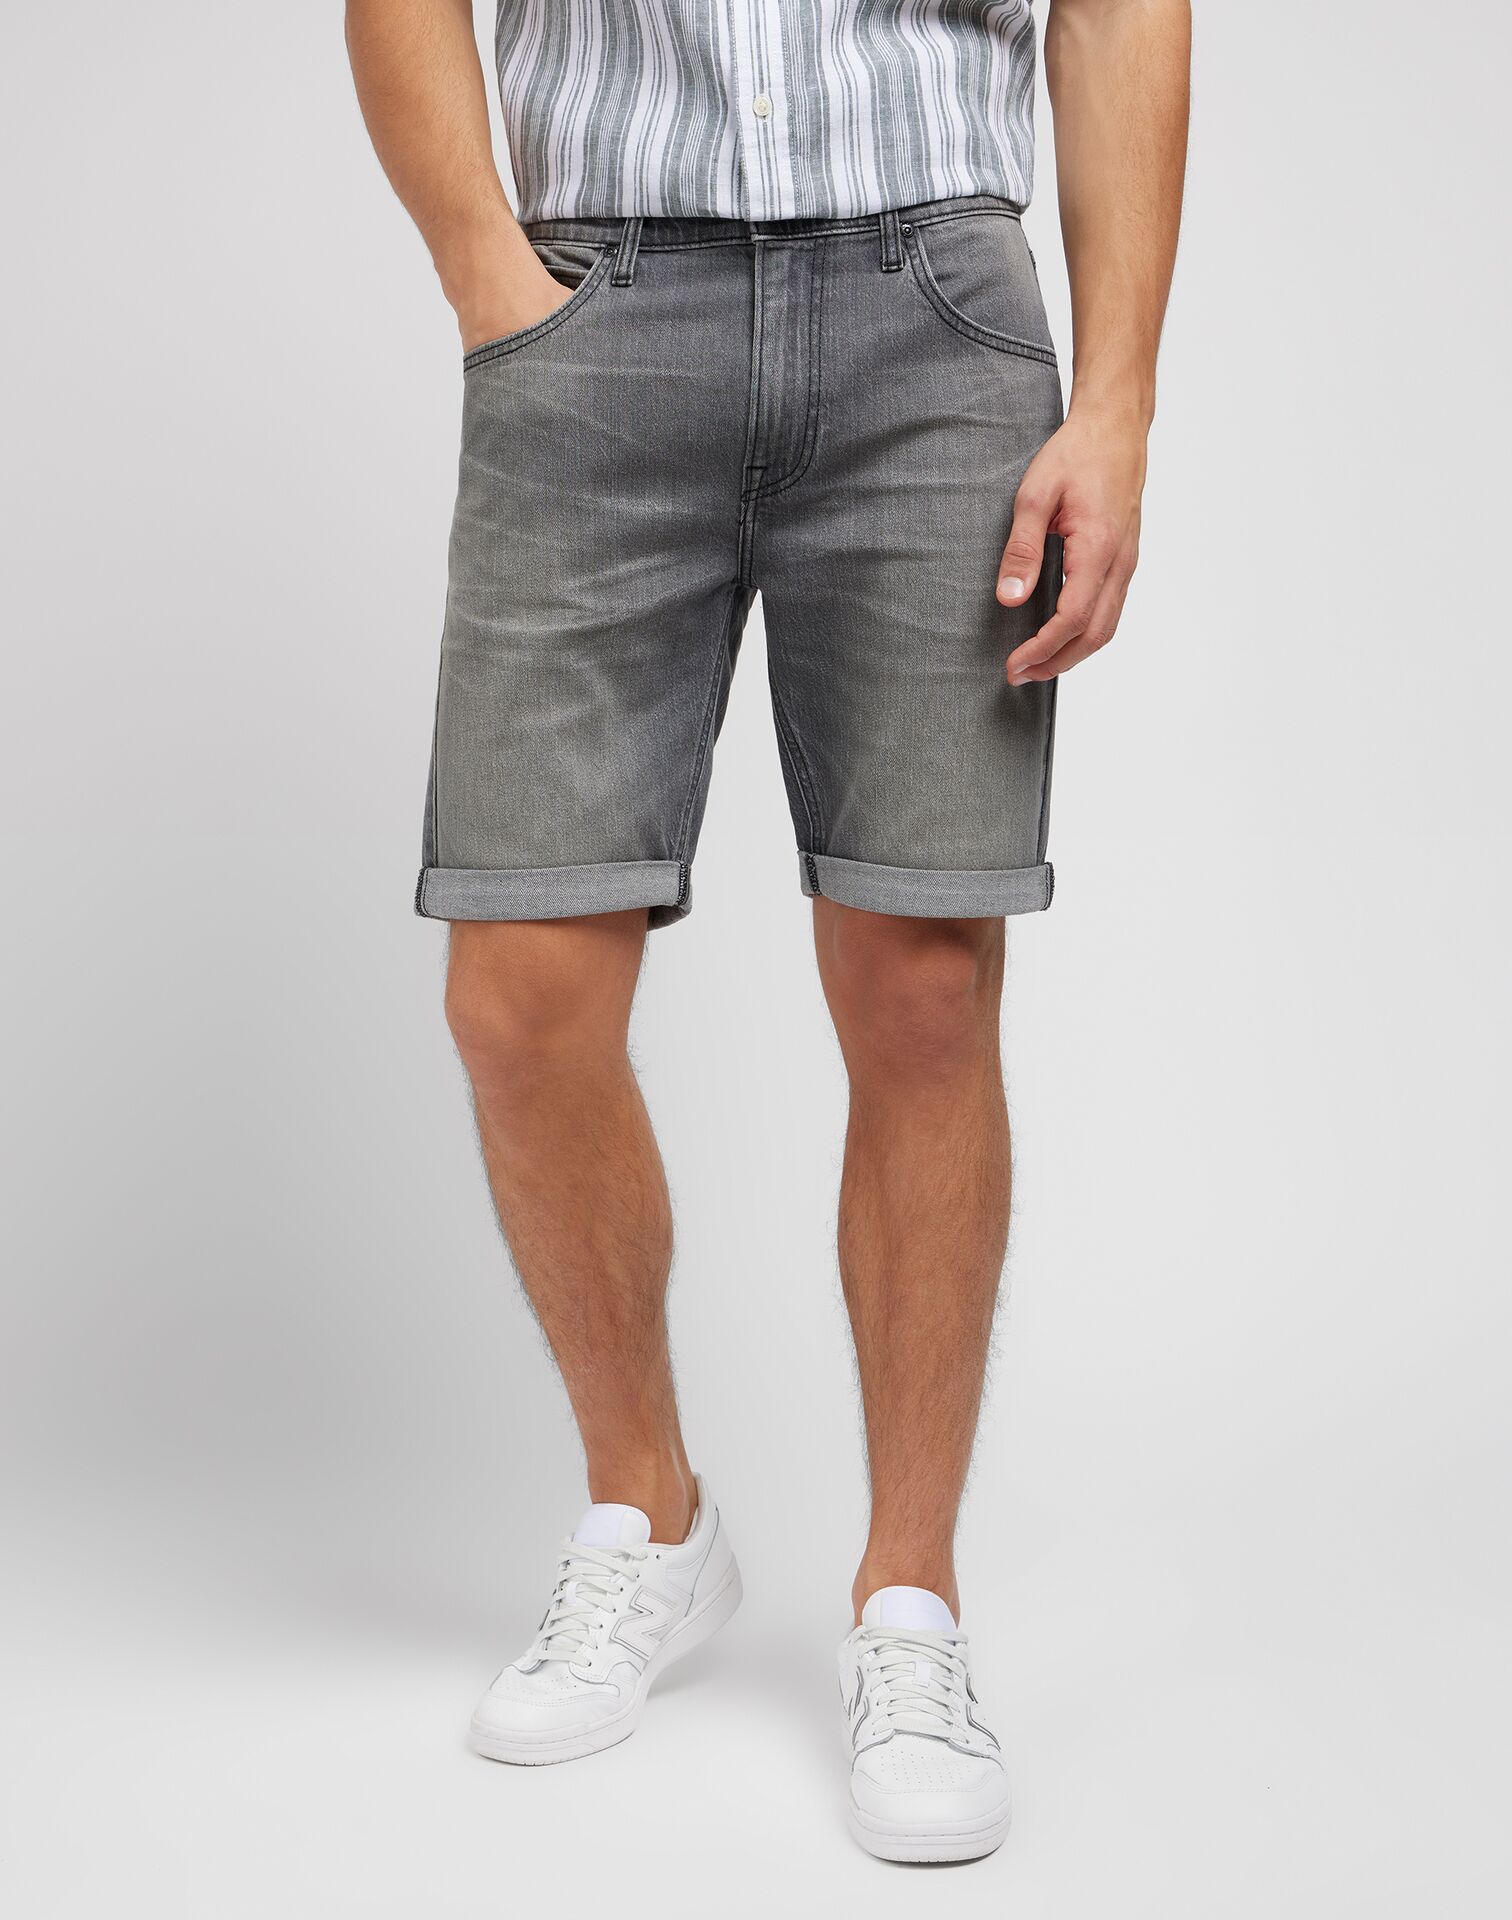 Se Lee 5 Pocket Jeans Shorts - Washed Grey W34 hos monomen